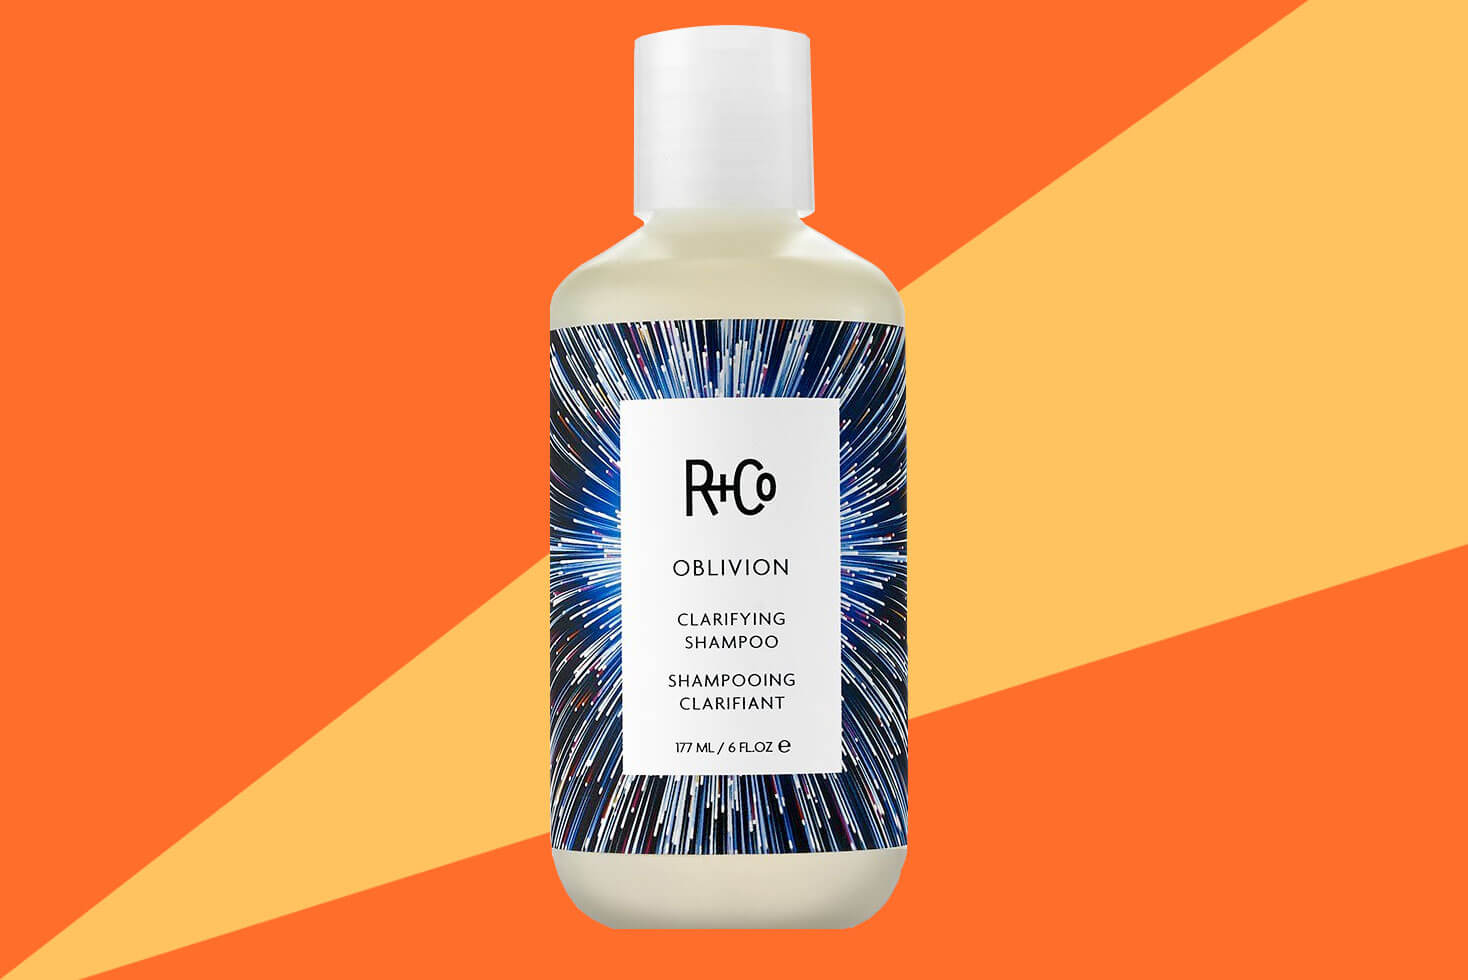 R+CO Oblivion Clarifying Shampoo Review